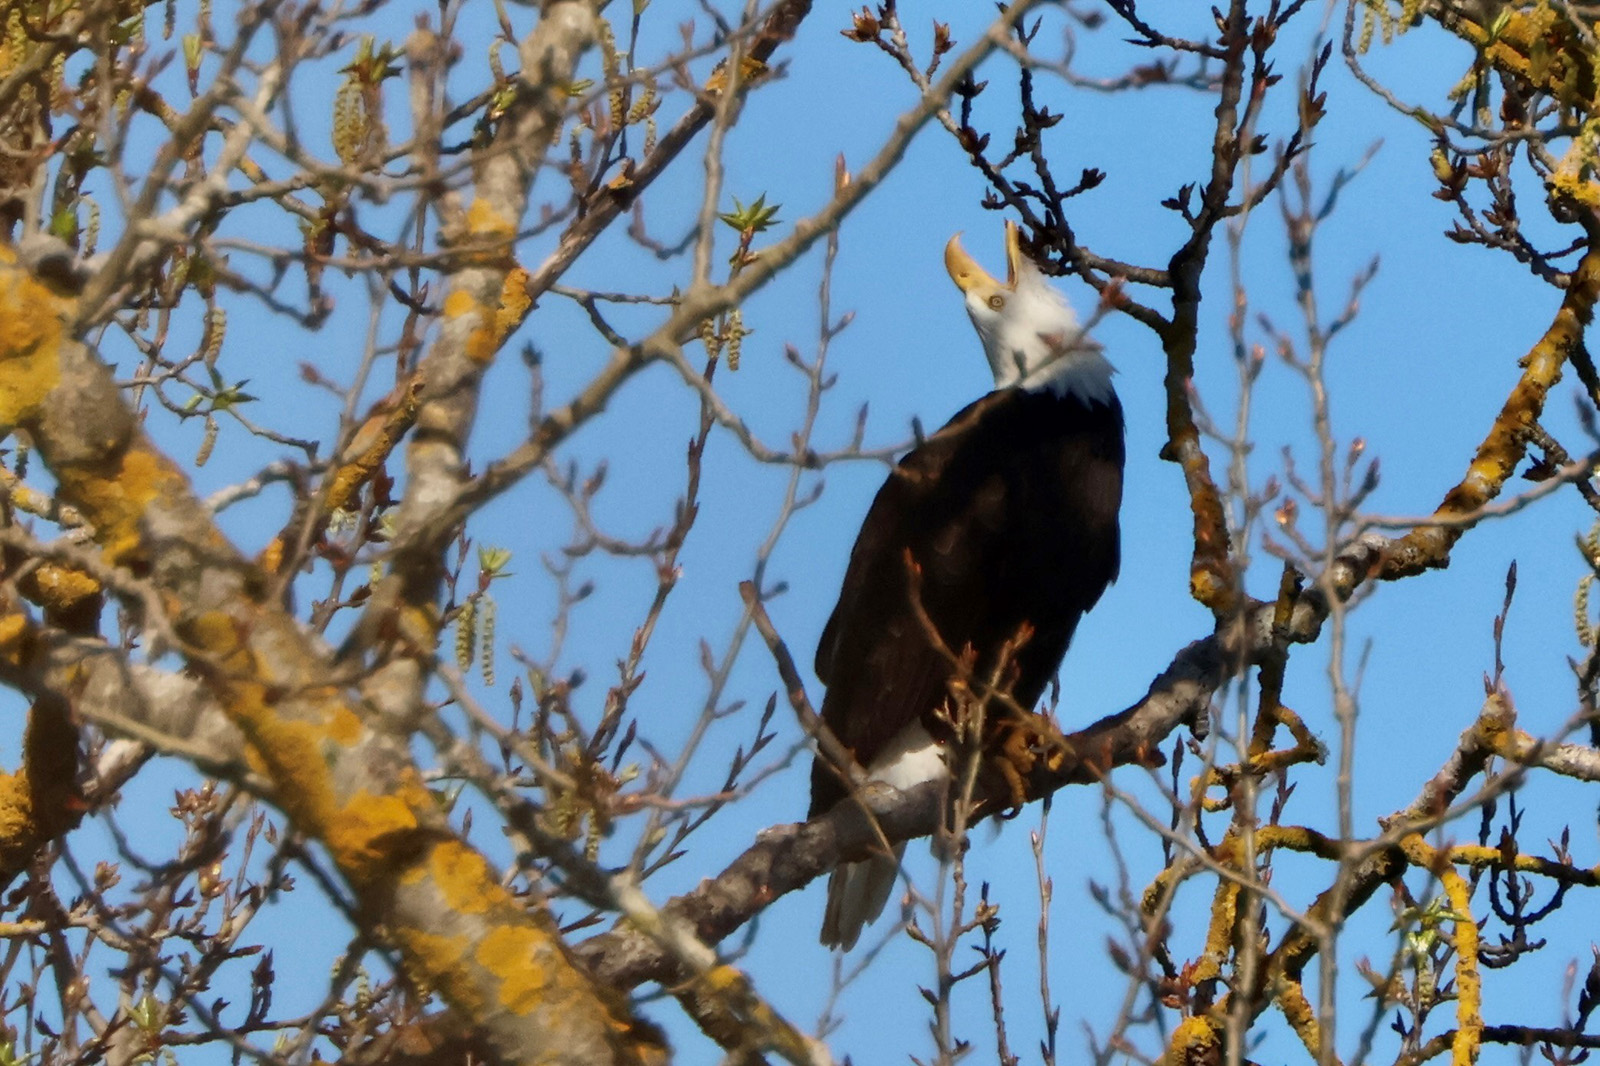 Audubon eagle vocalizing